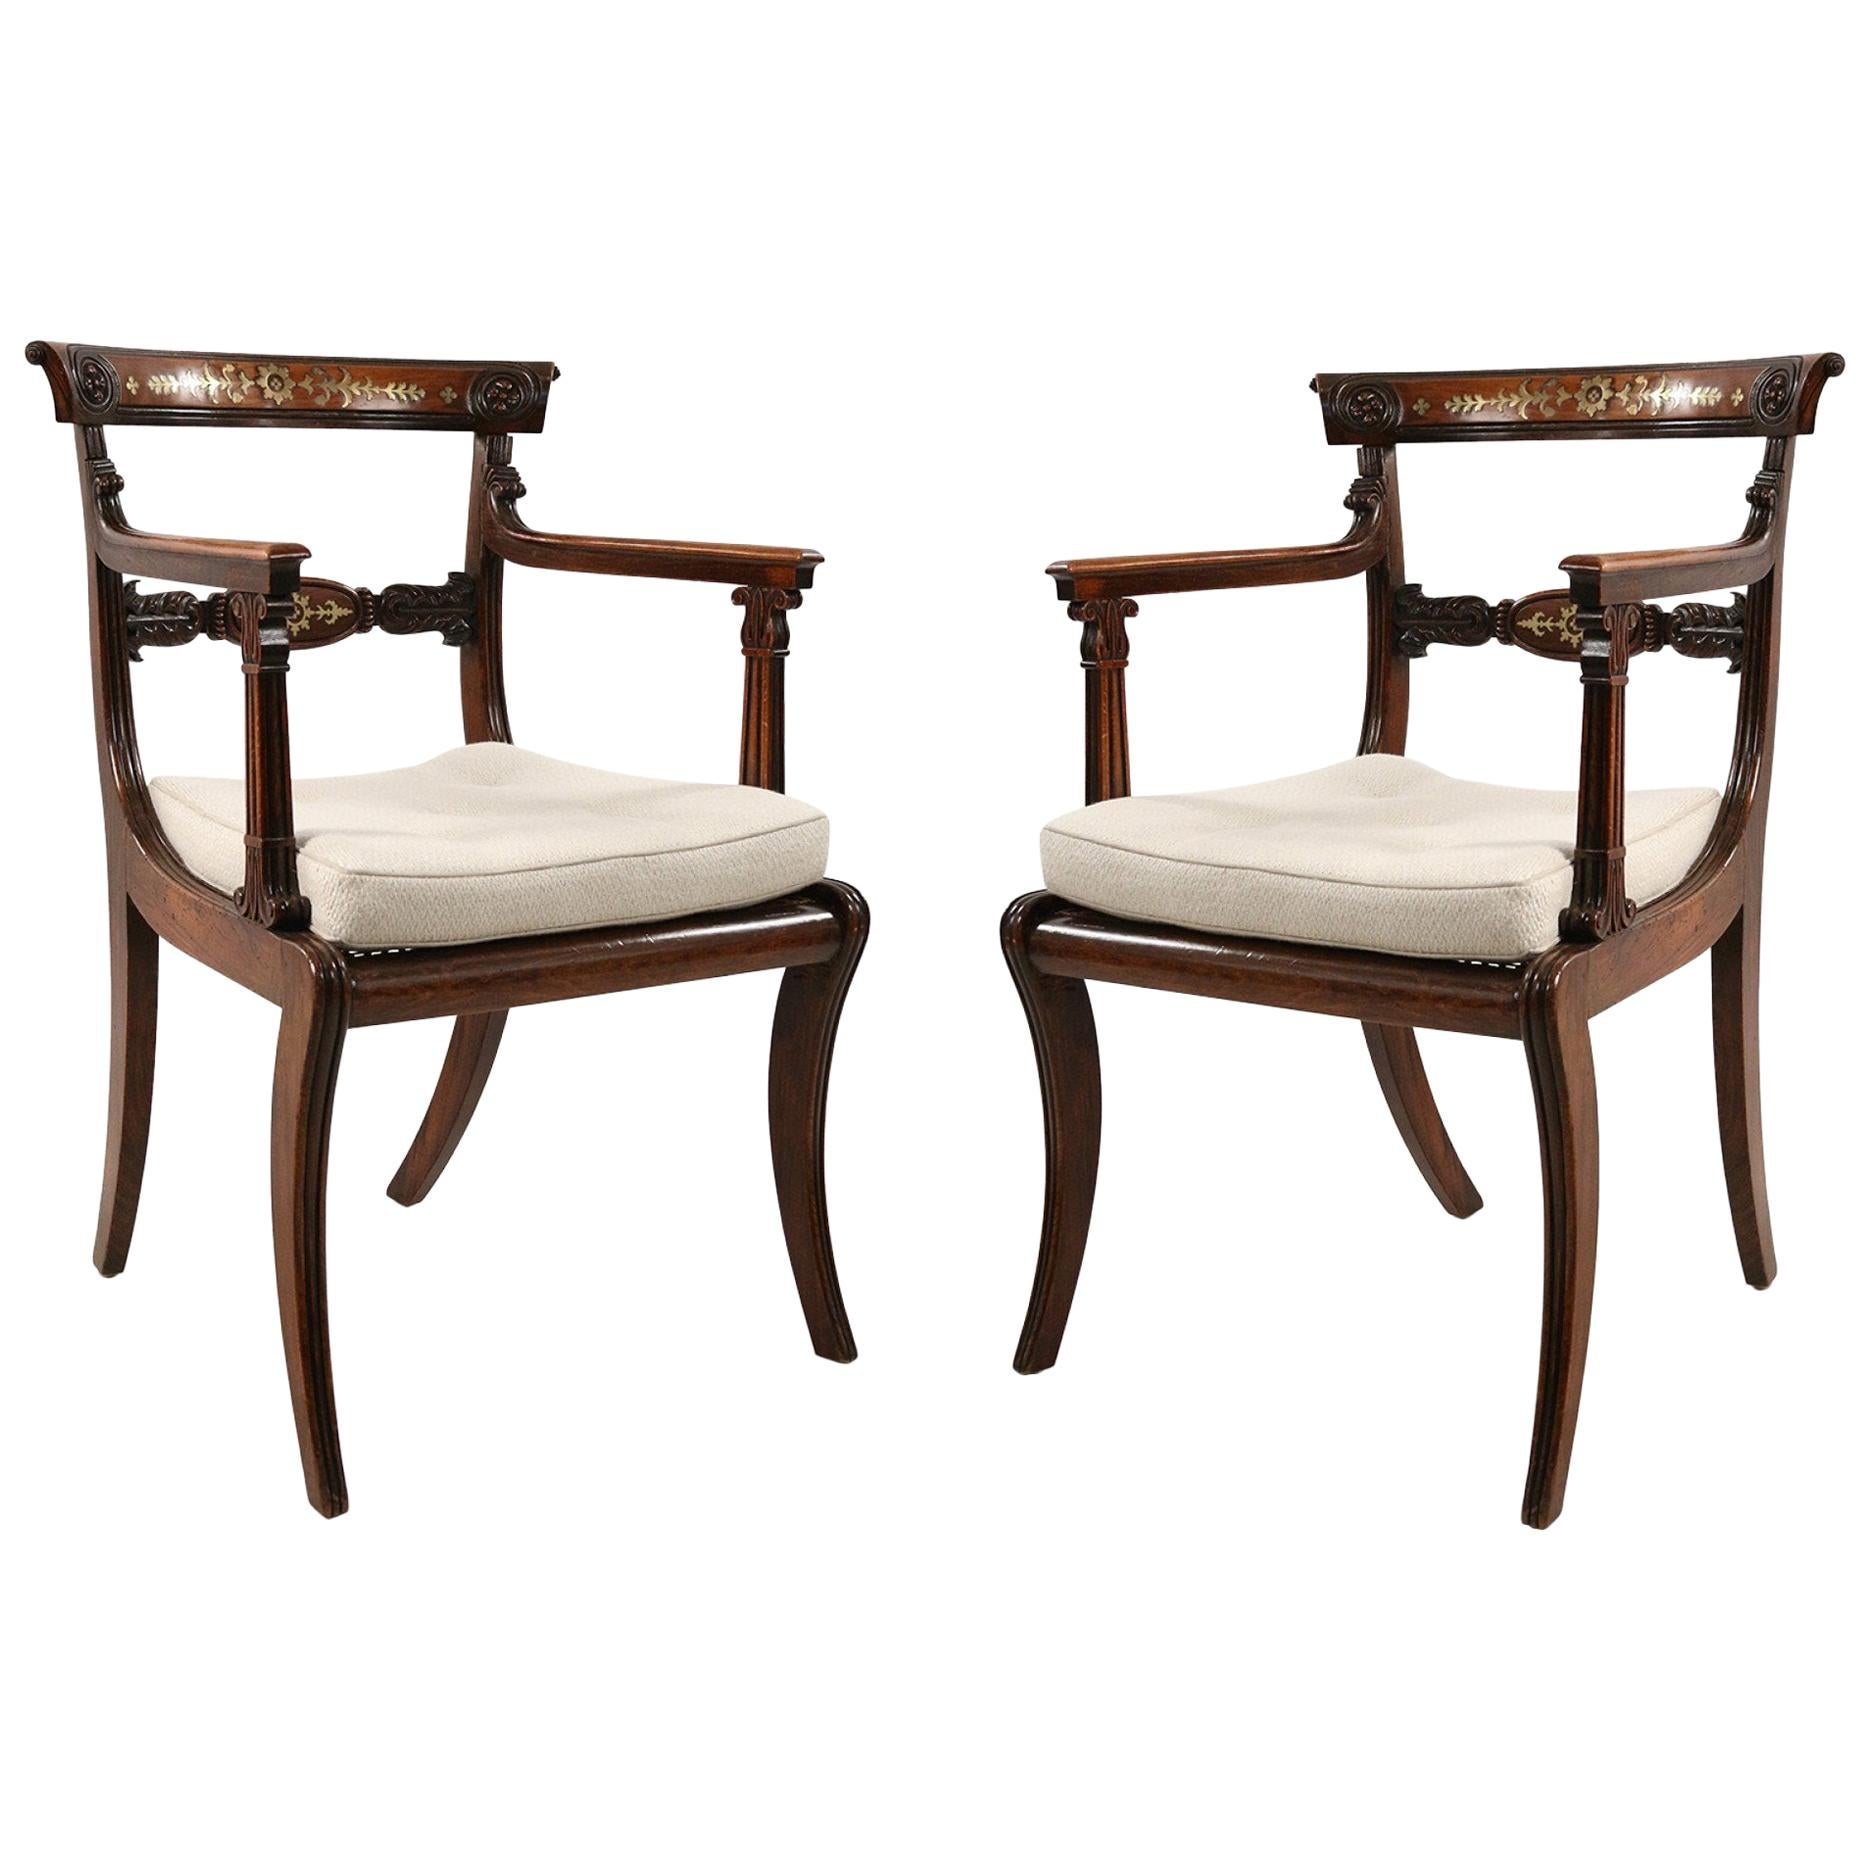 Ensemble de deux fauteuils de style Régence anglaise en chêne avec incrustations de laiton et assise cannée